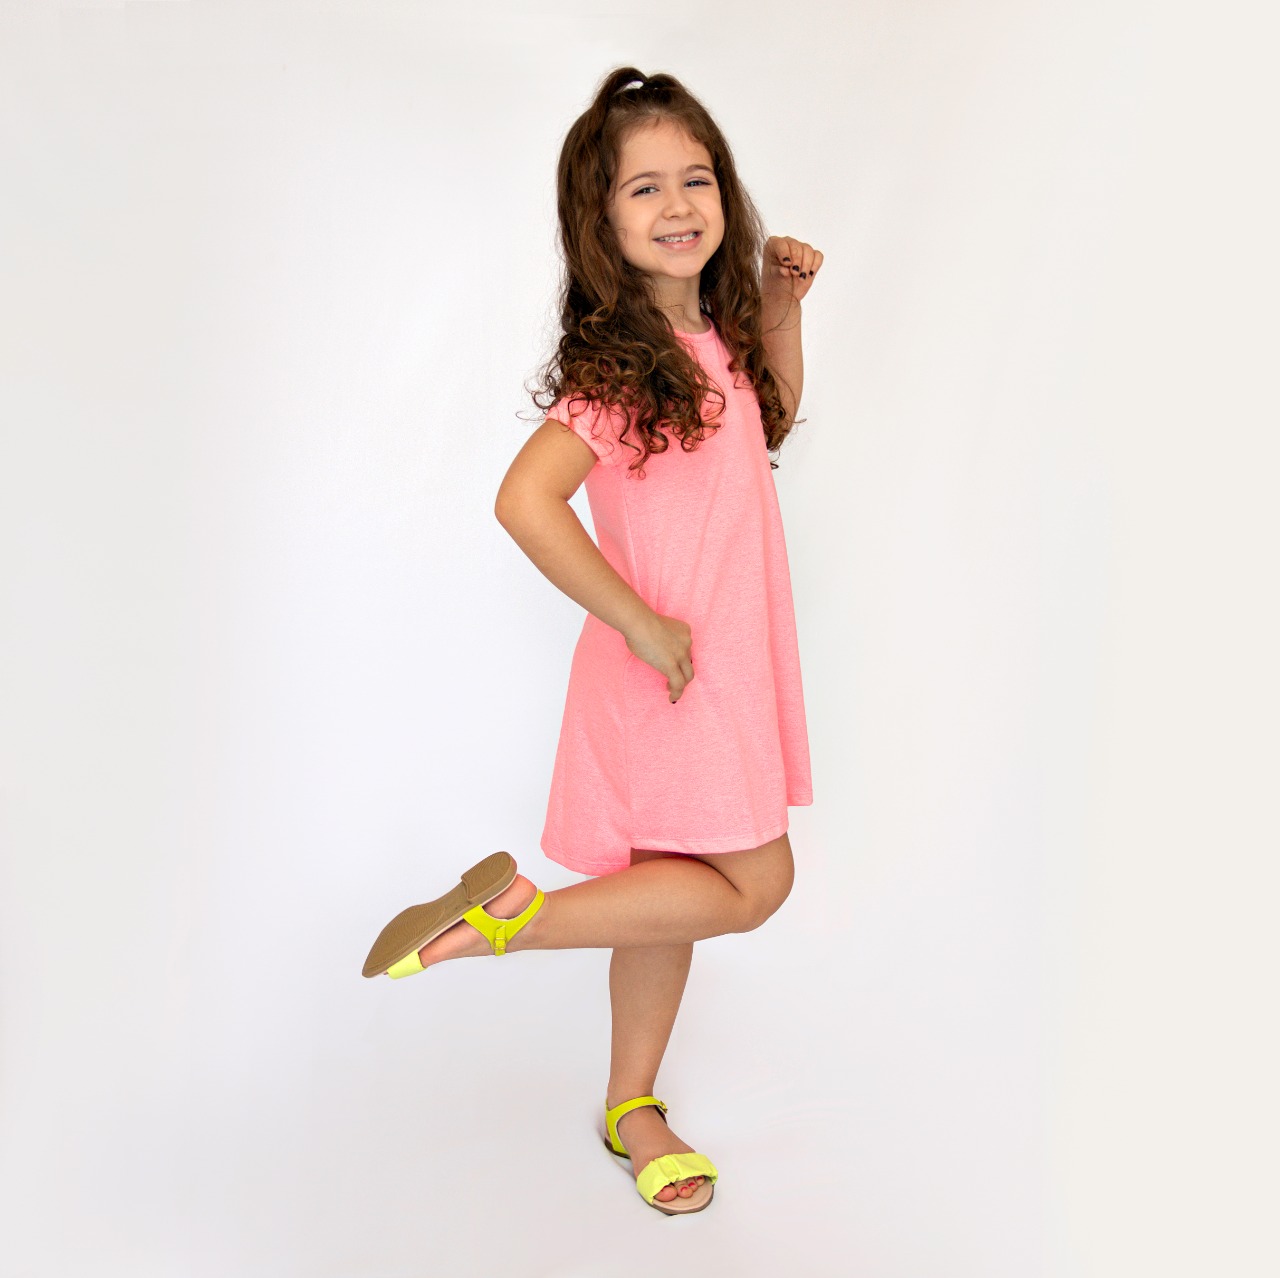 Sandálias na AnaCa Calçados trazem conforto, cores e beleza para as meninas